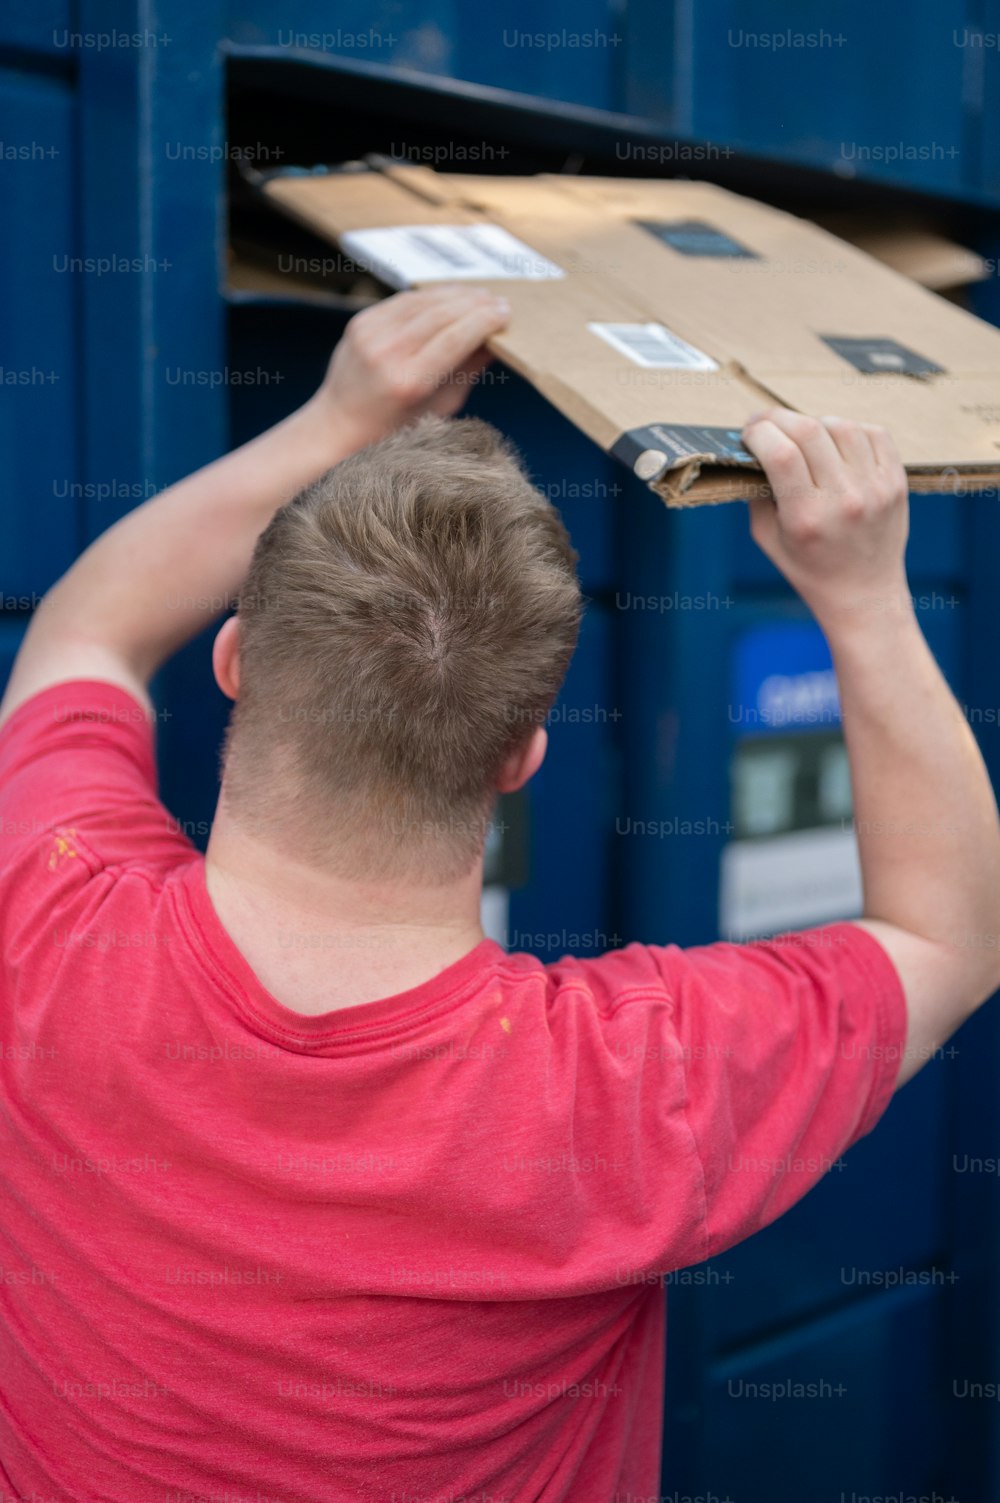 Un hombre poniendo una caja de cartón encima de una caja de cartón